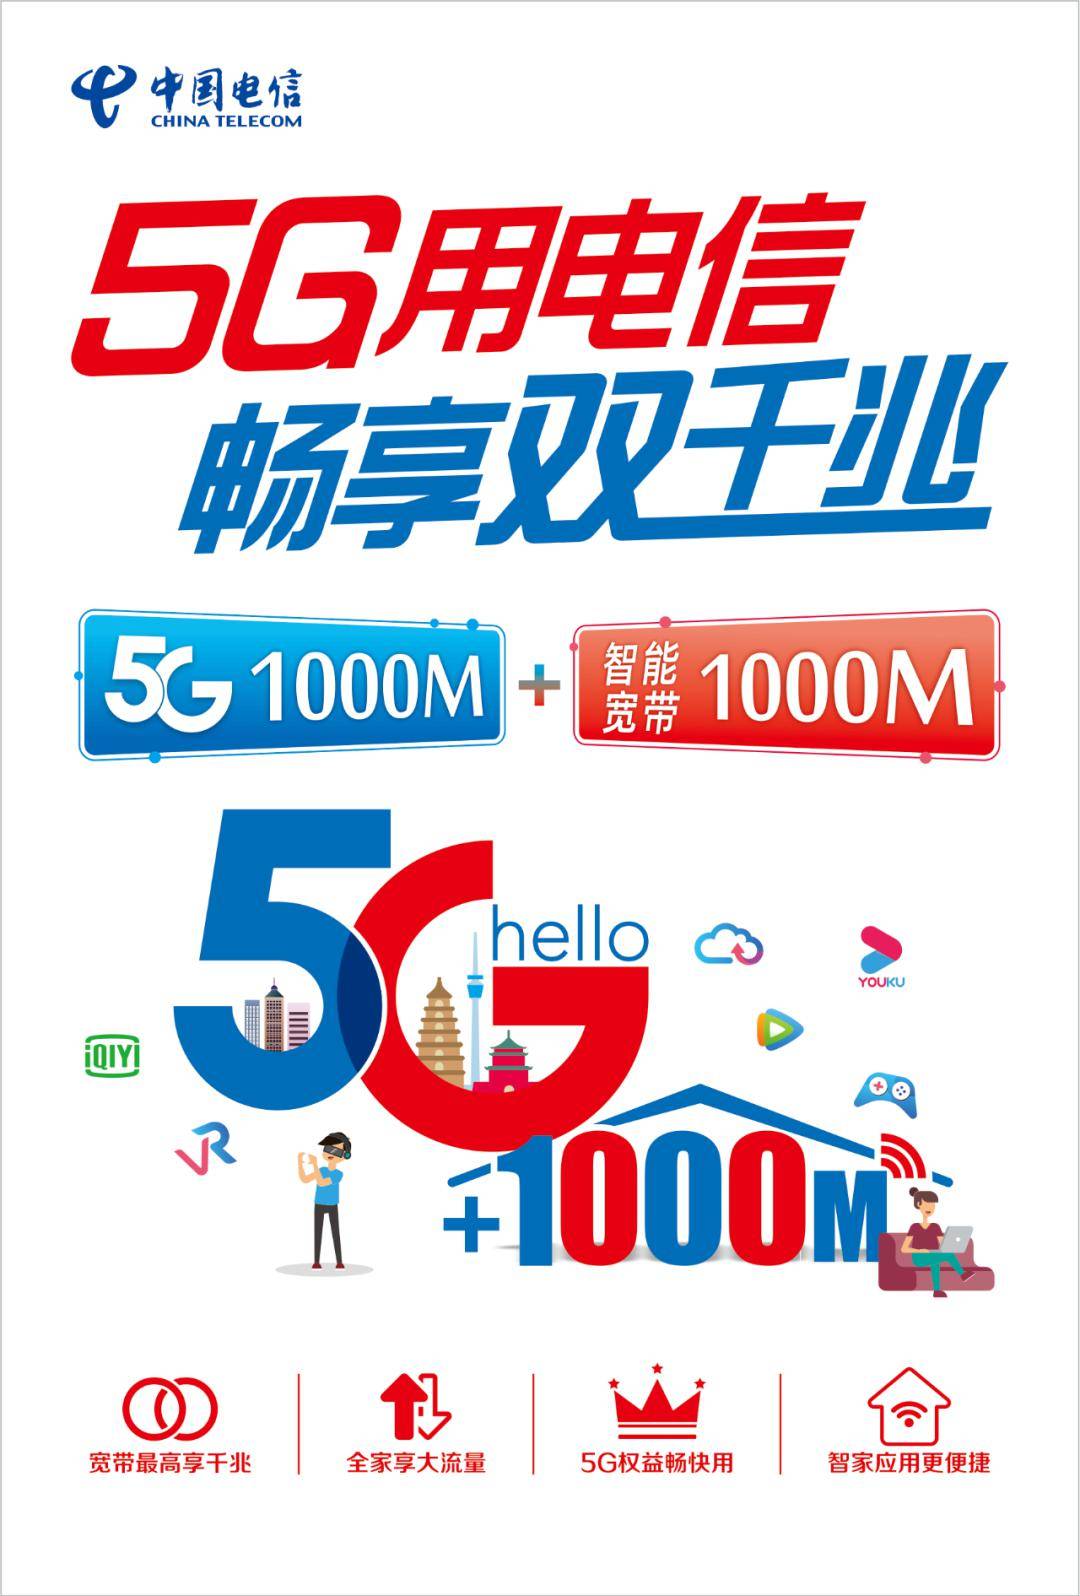 电信5g千兆网速   电信千兆智能宽带 = 神木电信提供高品质宽带网络